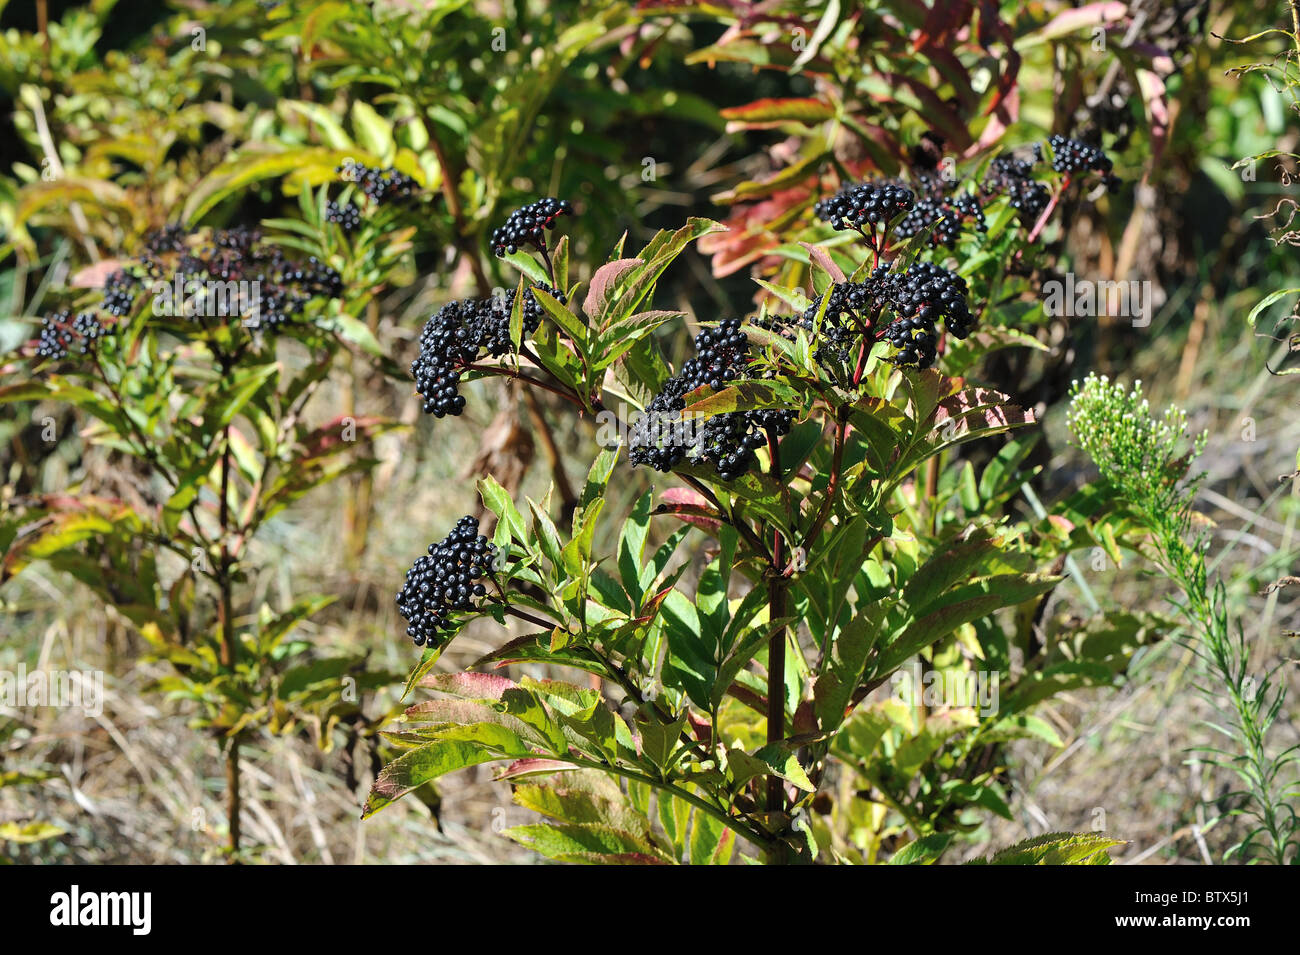 Europäische Zwerg elder - Danewort - Walewort (Sambucus Ebulus) Früchte im Herbst - Vaucluse - Provence - Frankreich Stockfoto